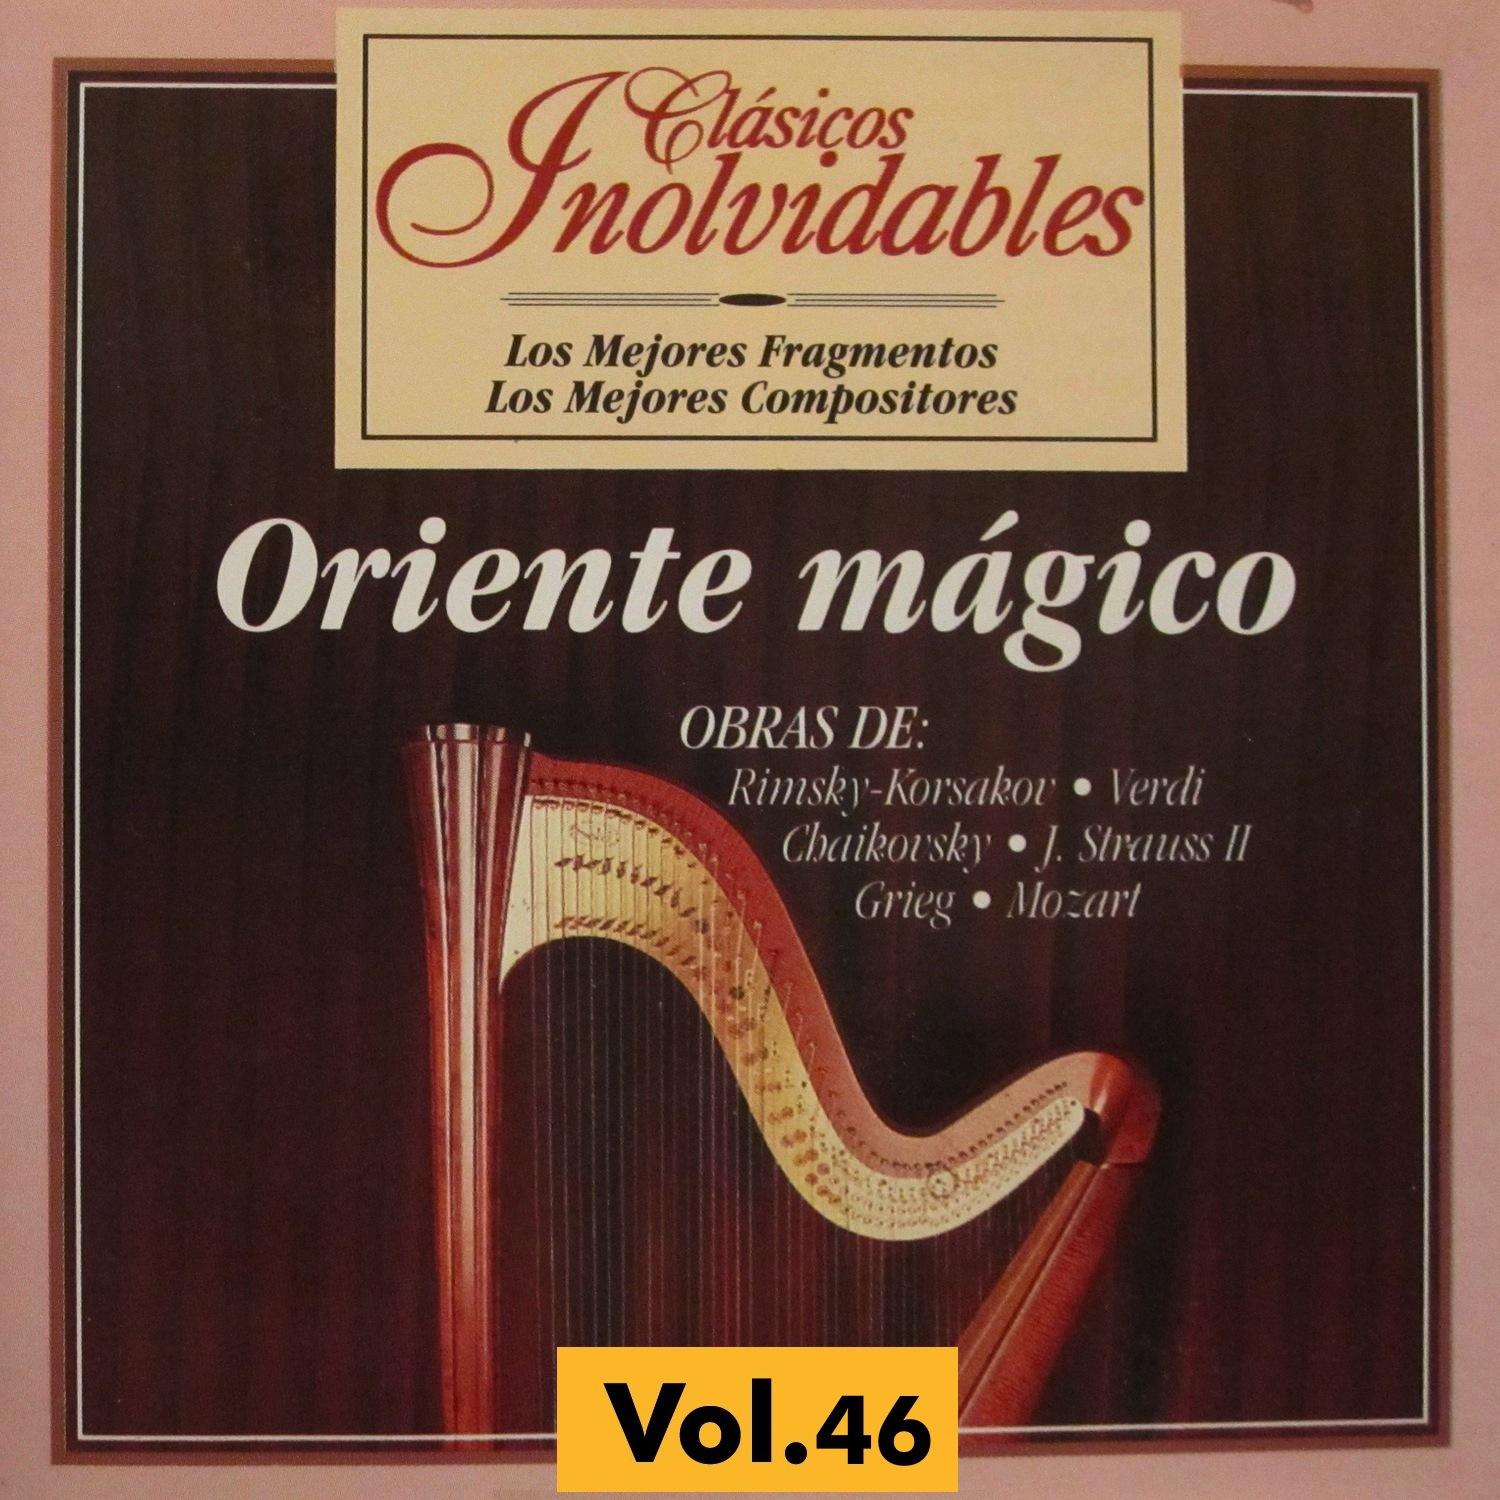 Violin Concerto No. 5 in A Major, K. 219: III. Rondeau, Tempo di Menuetto